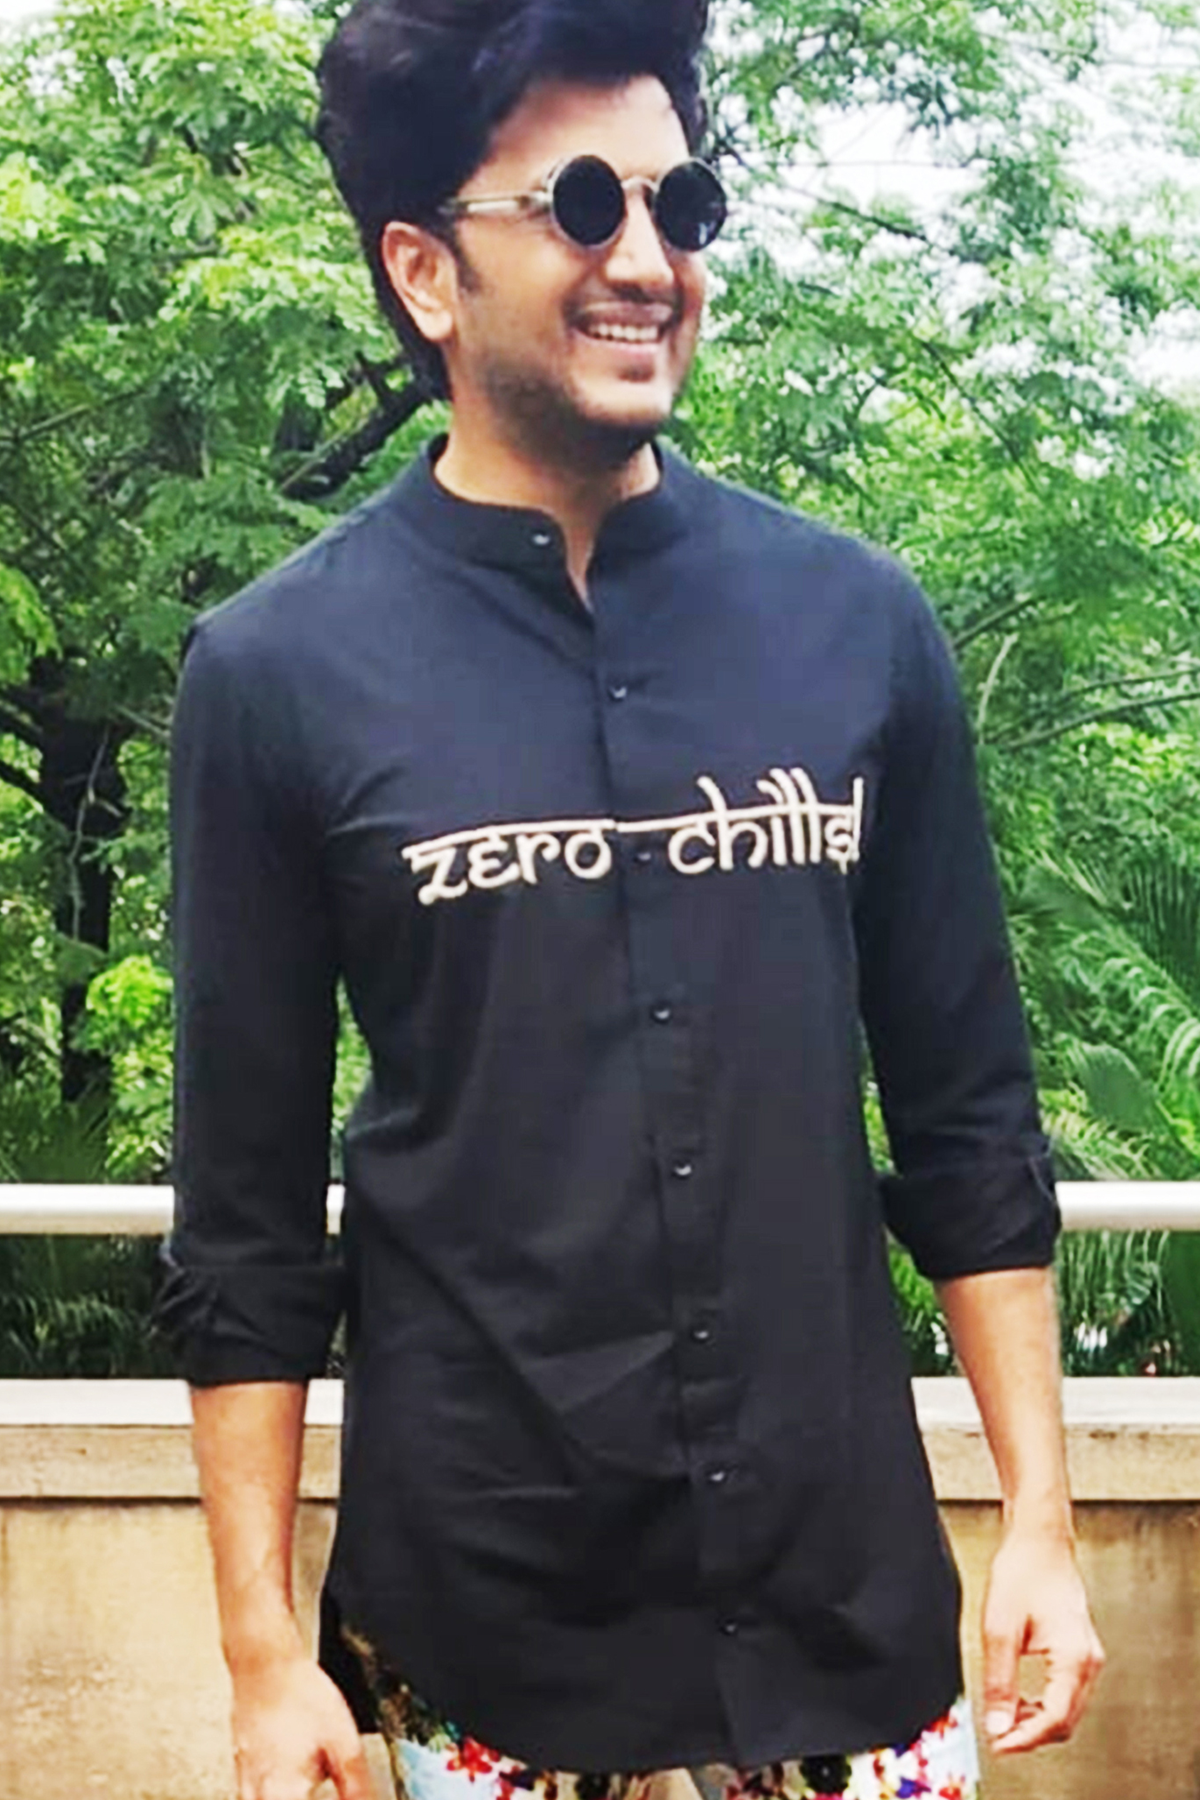 Ritiesh Deshmukh In Shirt With Zerochills Embroidery